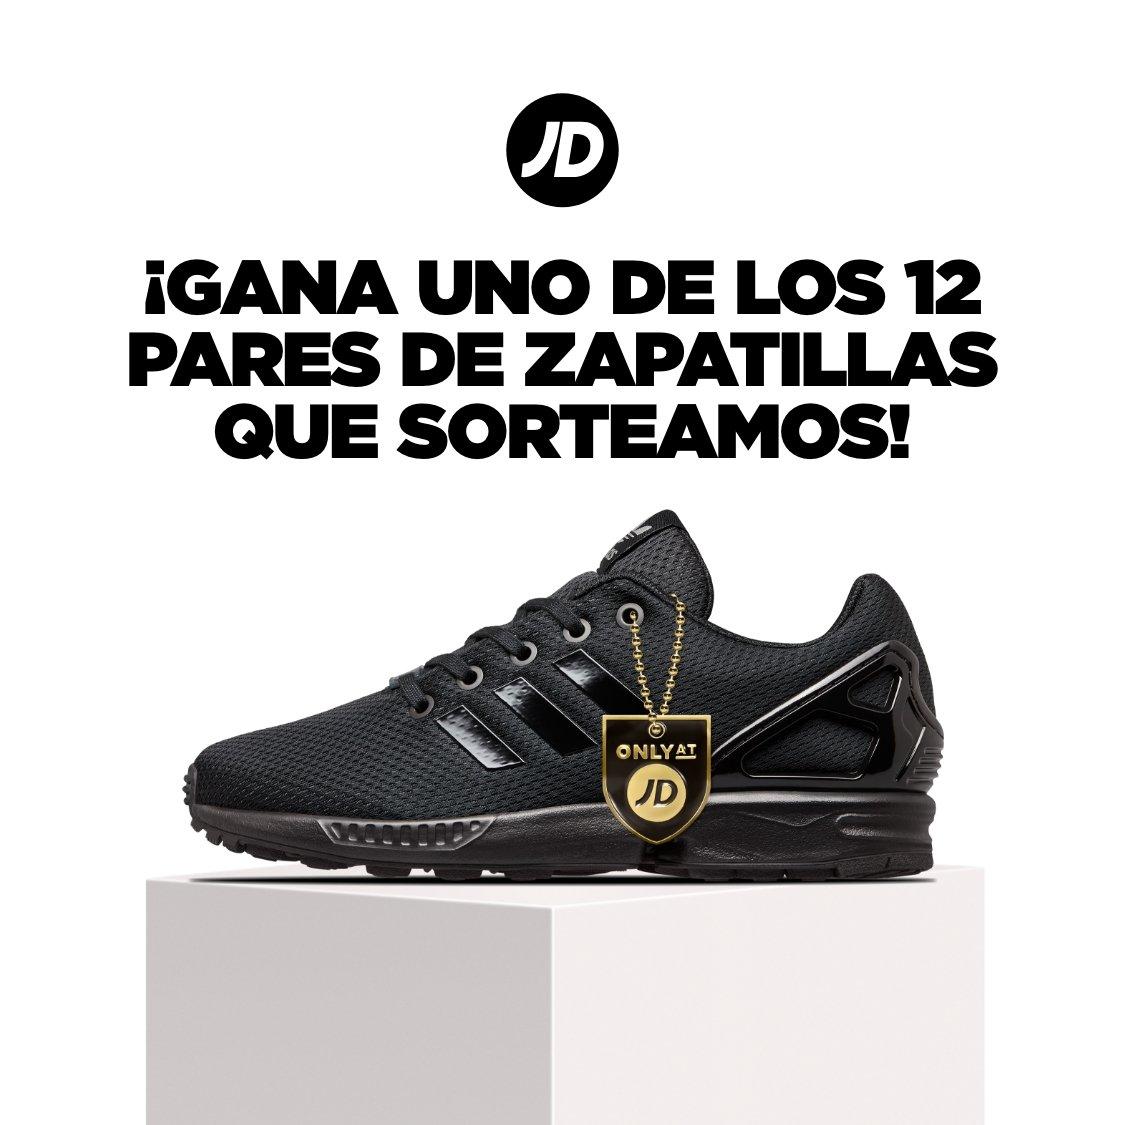 JD zapatillas adidas y Nike para hombre, mujer y niños. deportiva, ropa y